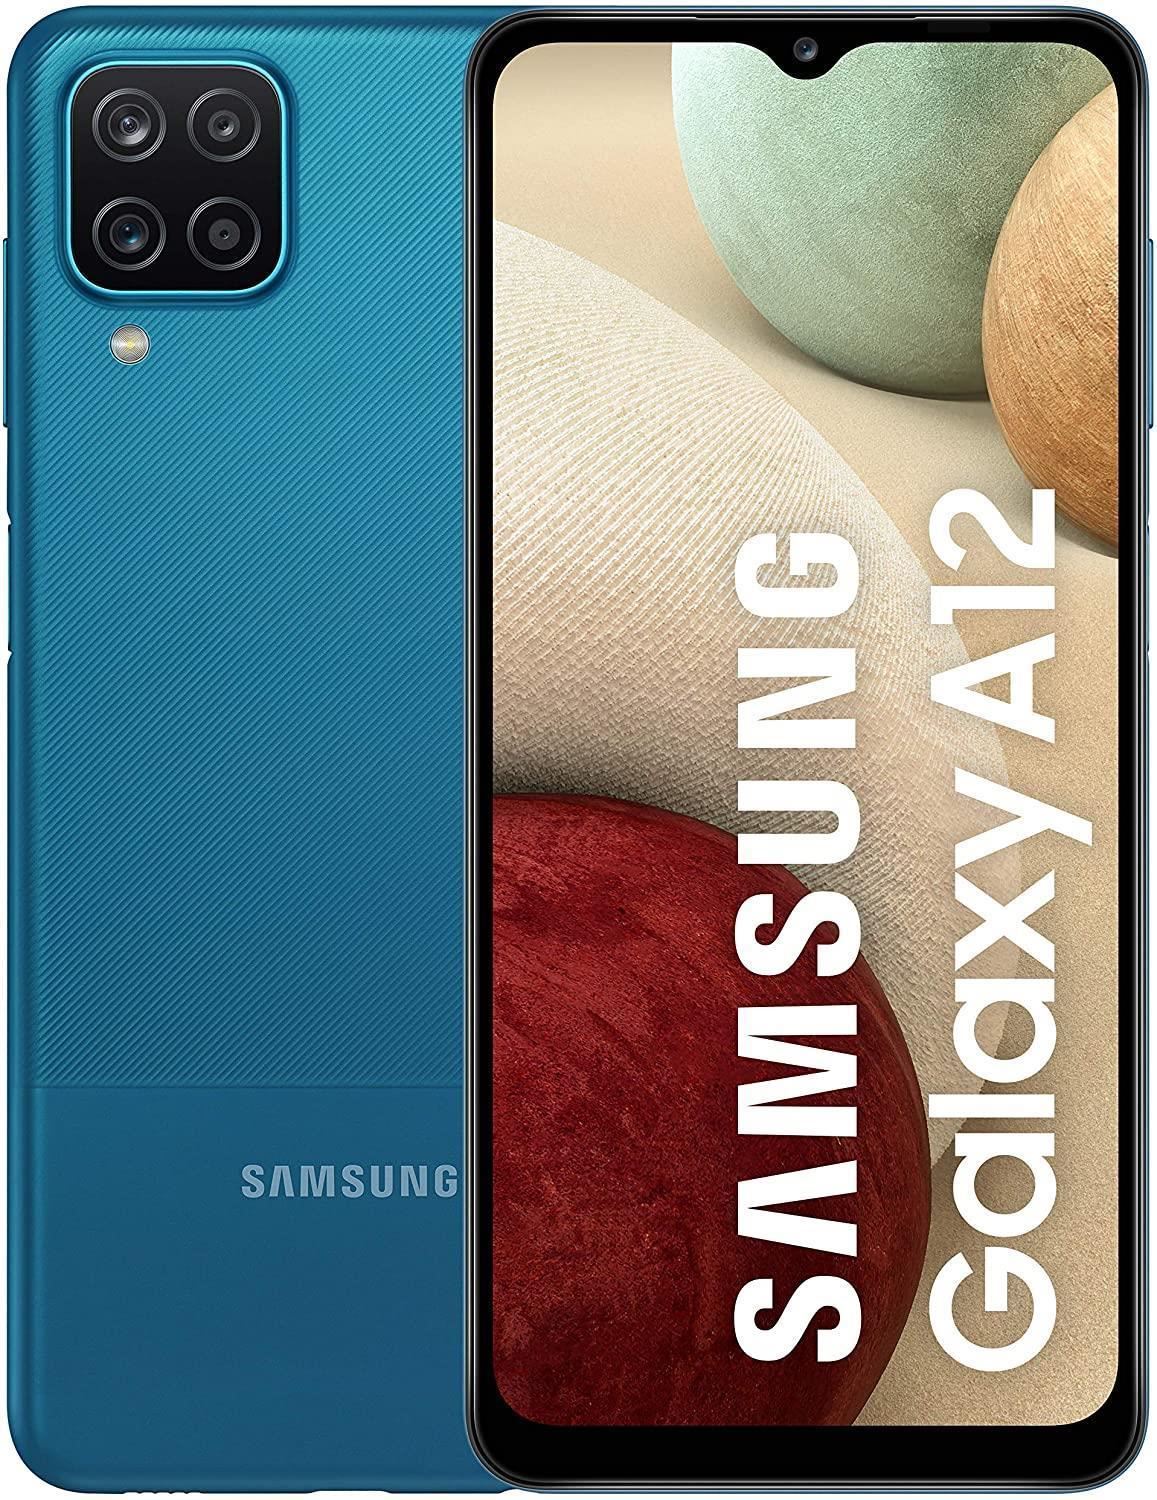 Samsung Galaxy A12 4G Smartphone Unlocked 32-64-128GB